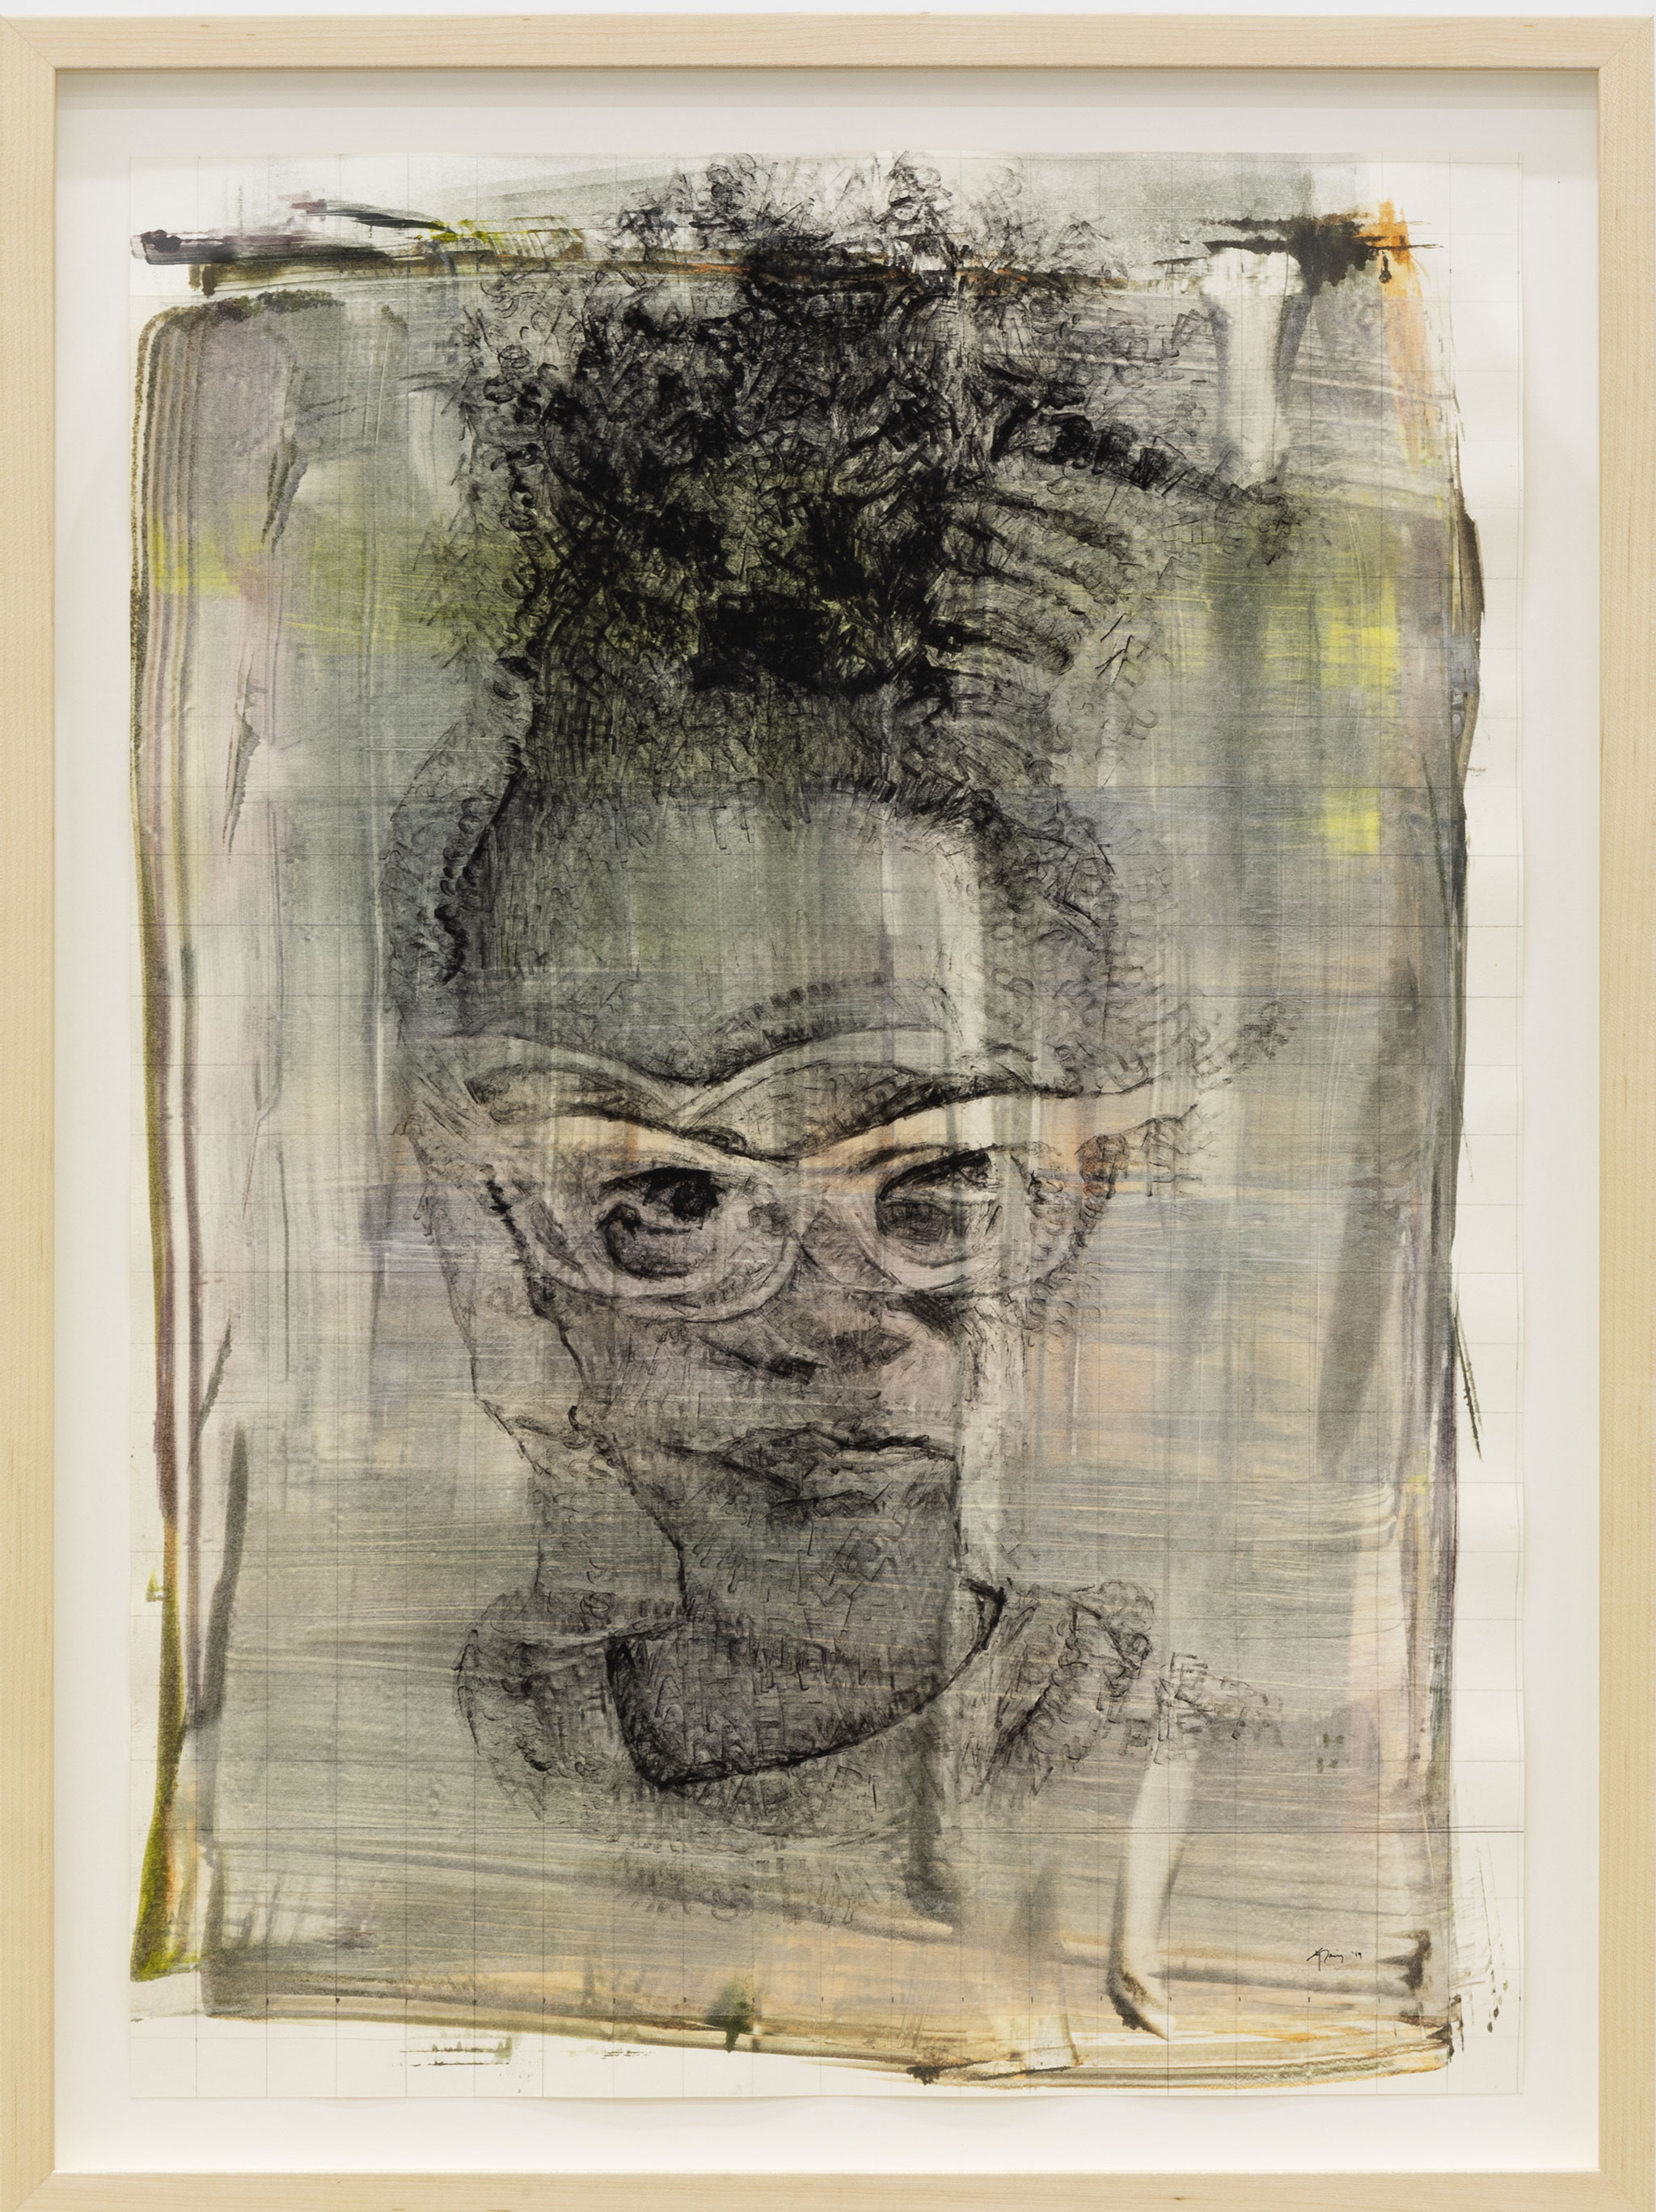 Kenturah Davis “A Sharp Whisper”, 2019. Pittura ad olio applicata con timbri di lettere in gomma su fondo colorato, carta Chine-collé. Foto dell'opera per gentile concessione dell'artista e della Matthew Brown Gallery.